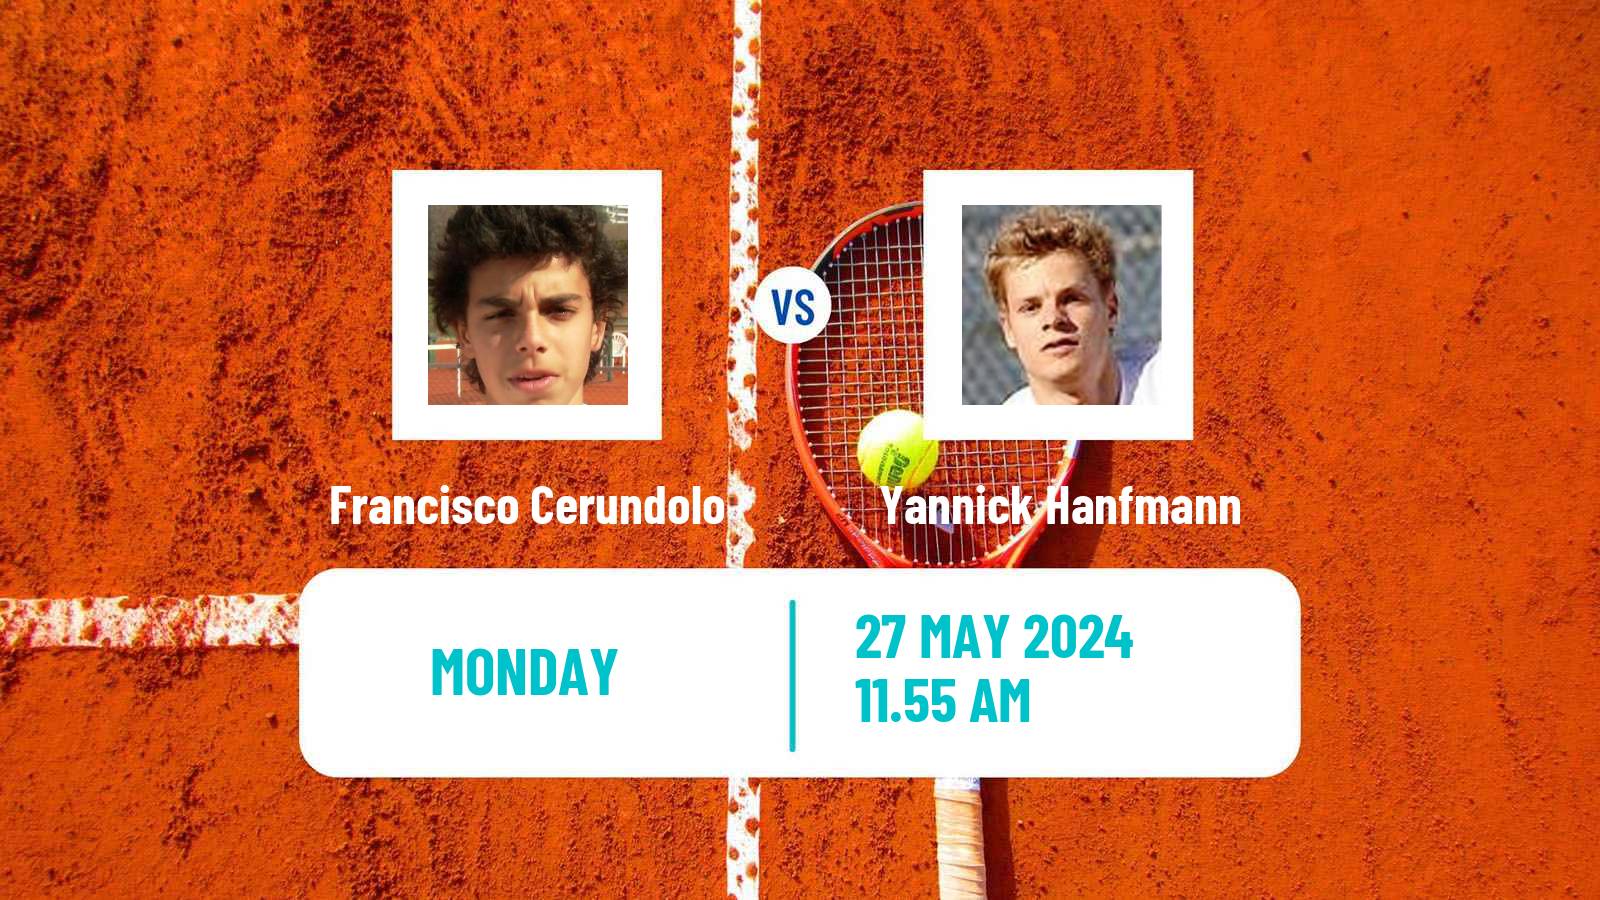 Tennis ATP Roland Garros Francisco Cerundolo - Yannick Hanfmann